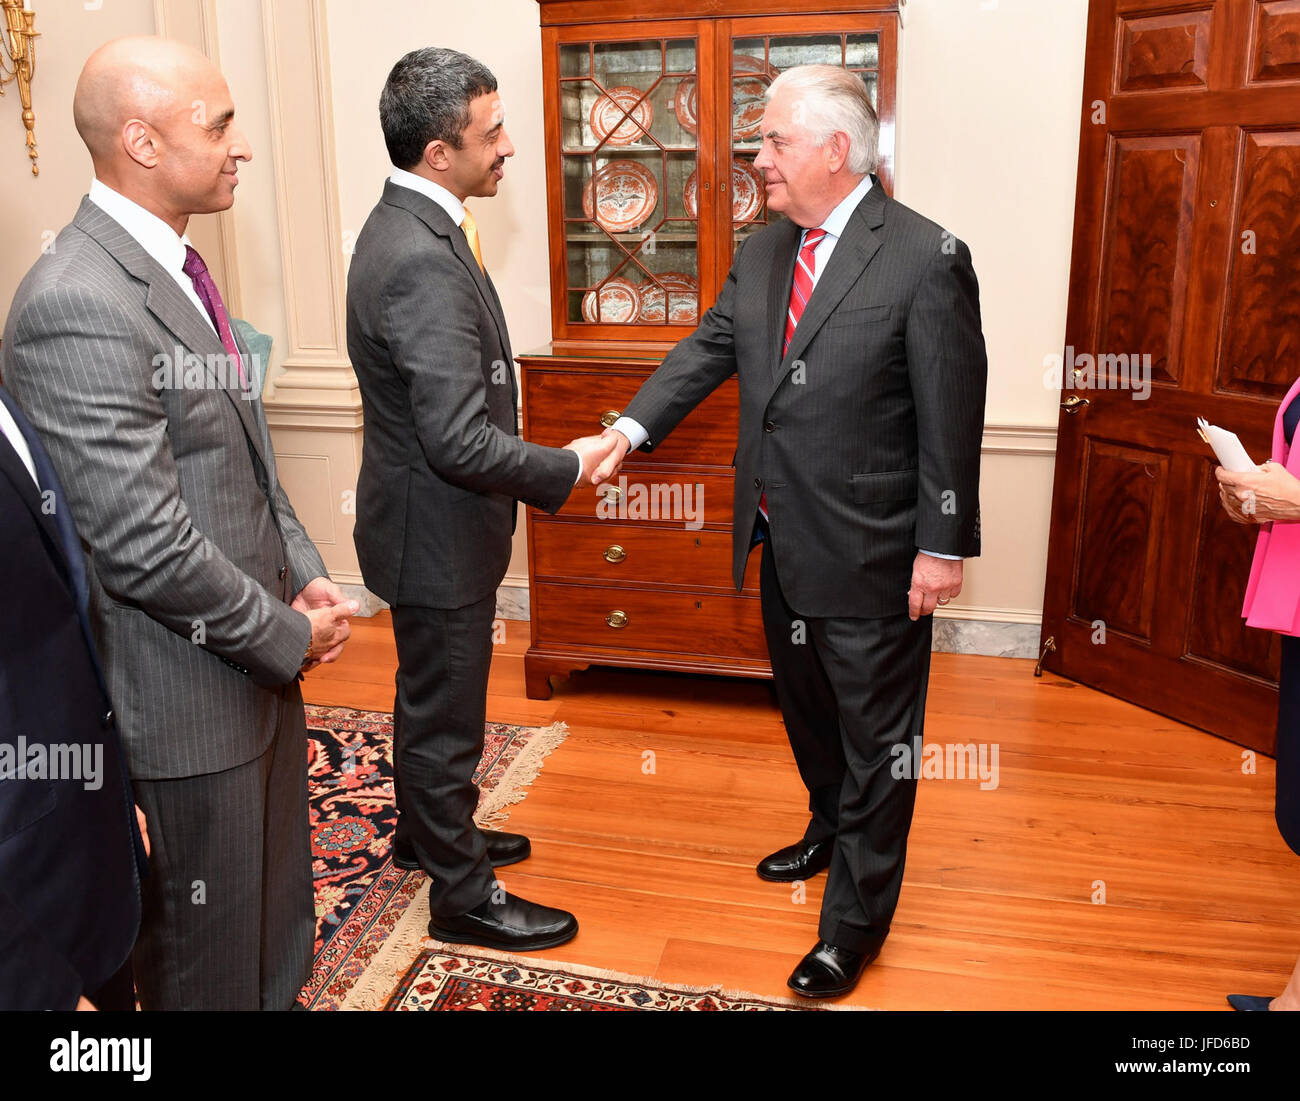 La secrétaire d'État des États-Unis, Rex Tillerson eau accueille le ministre des Affaires étrangères, Abdullah bin Zayed Al Nahyan avant leur dîner de travail au département d'État des États-Unis à Washington, D.C., le 14 juin 2017. Banque D'Images